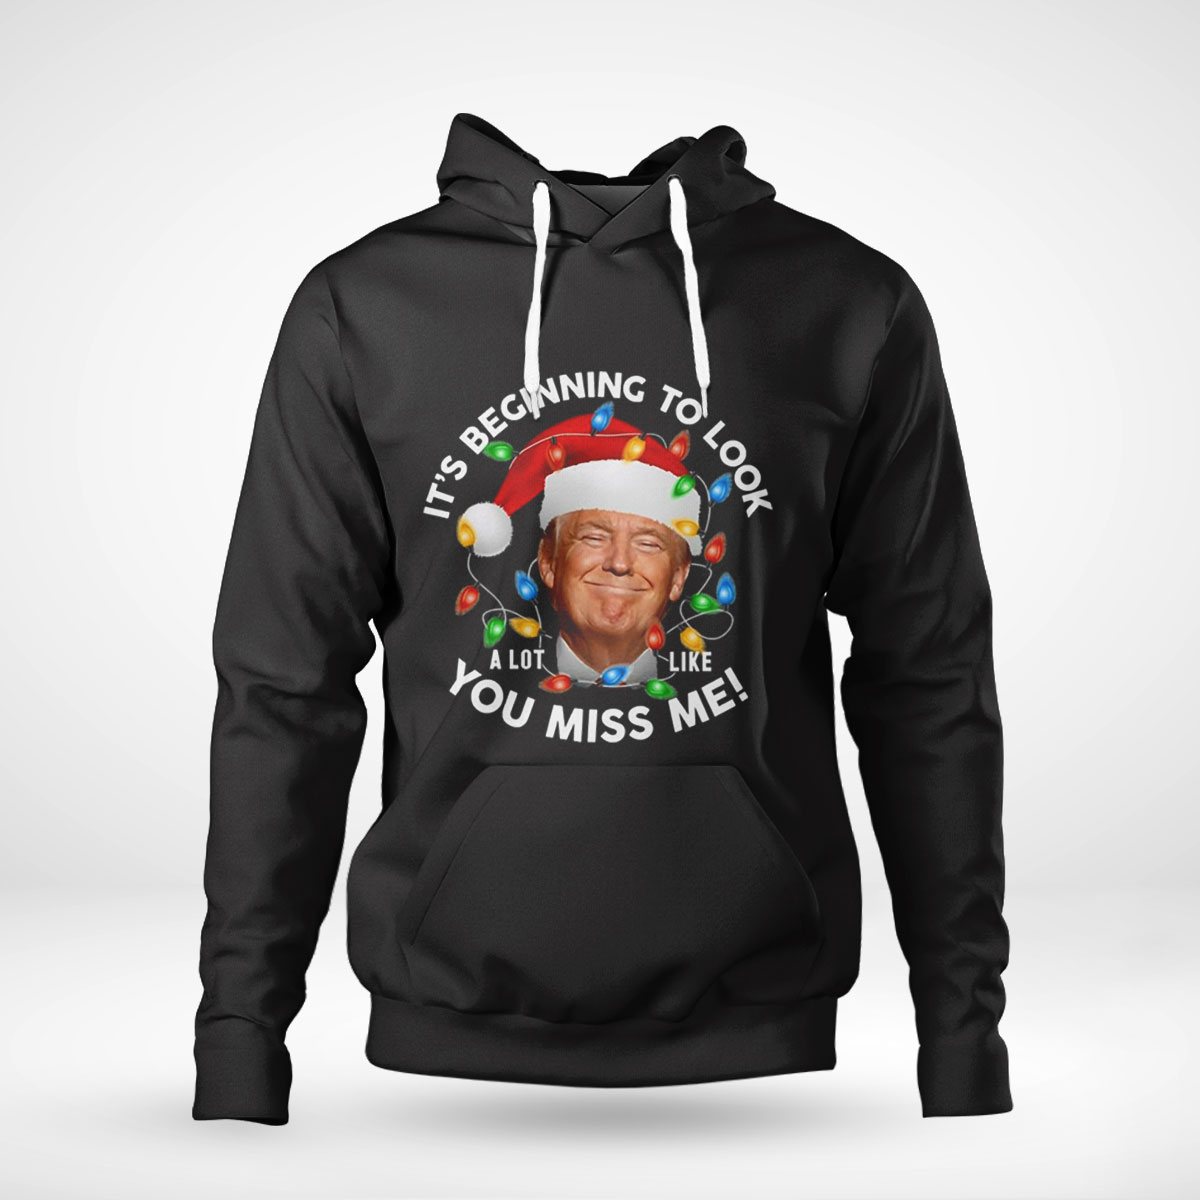 Make Christmas Great Again Funny Trump Ugly Shirt Hoodie Sweatshirt, Tank Top, Ladies Tee